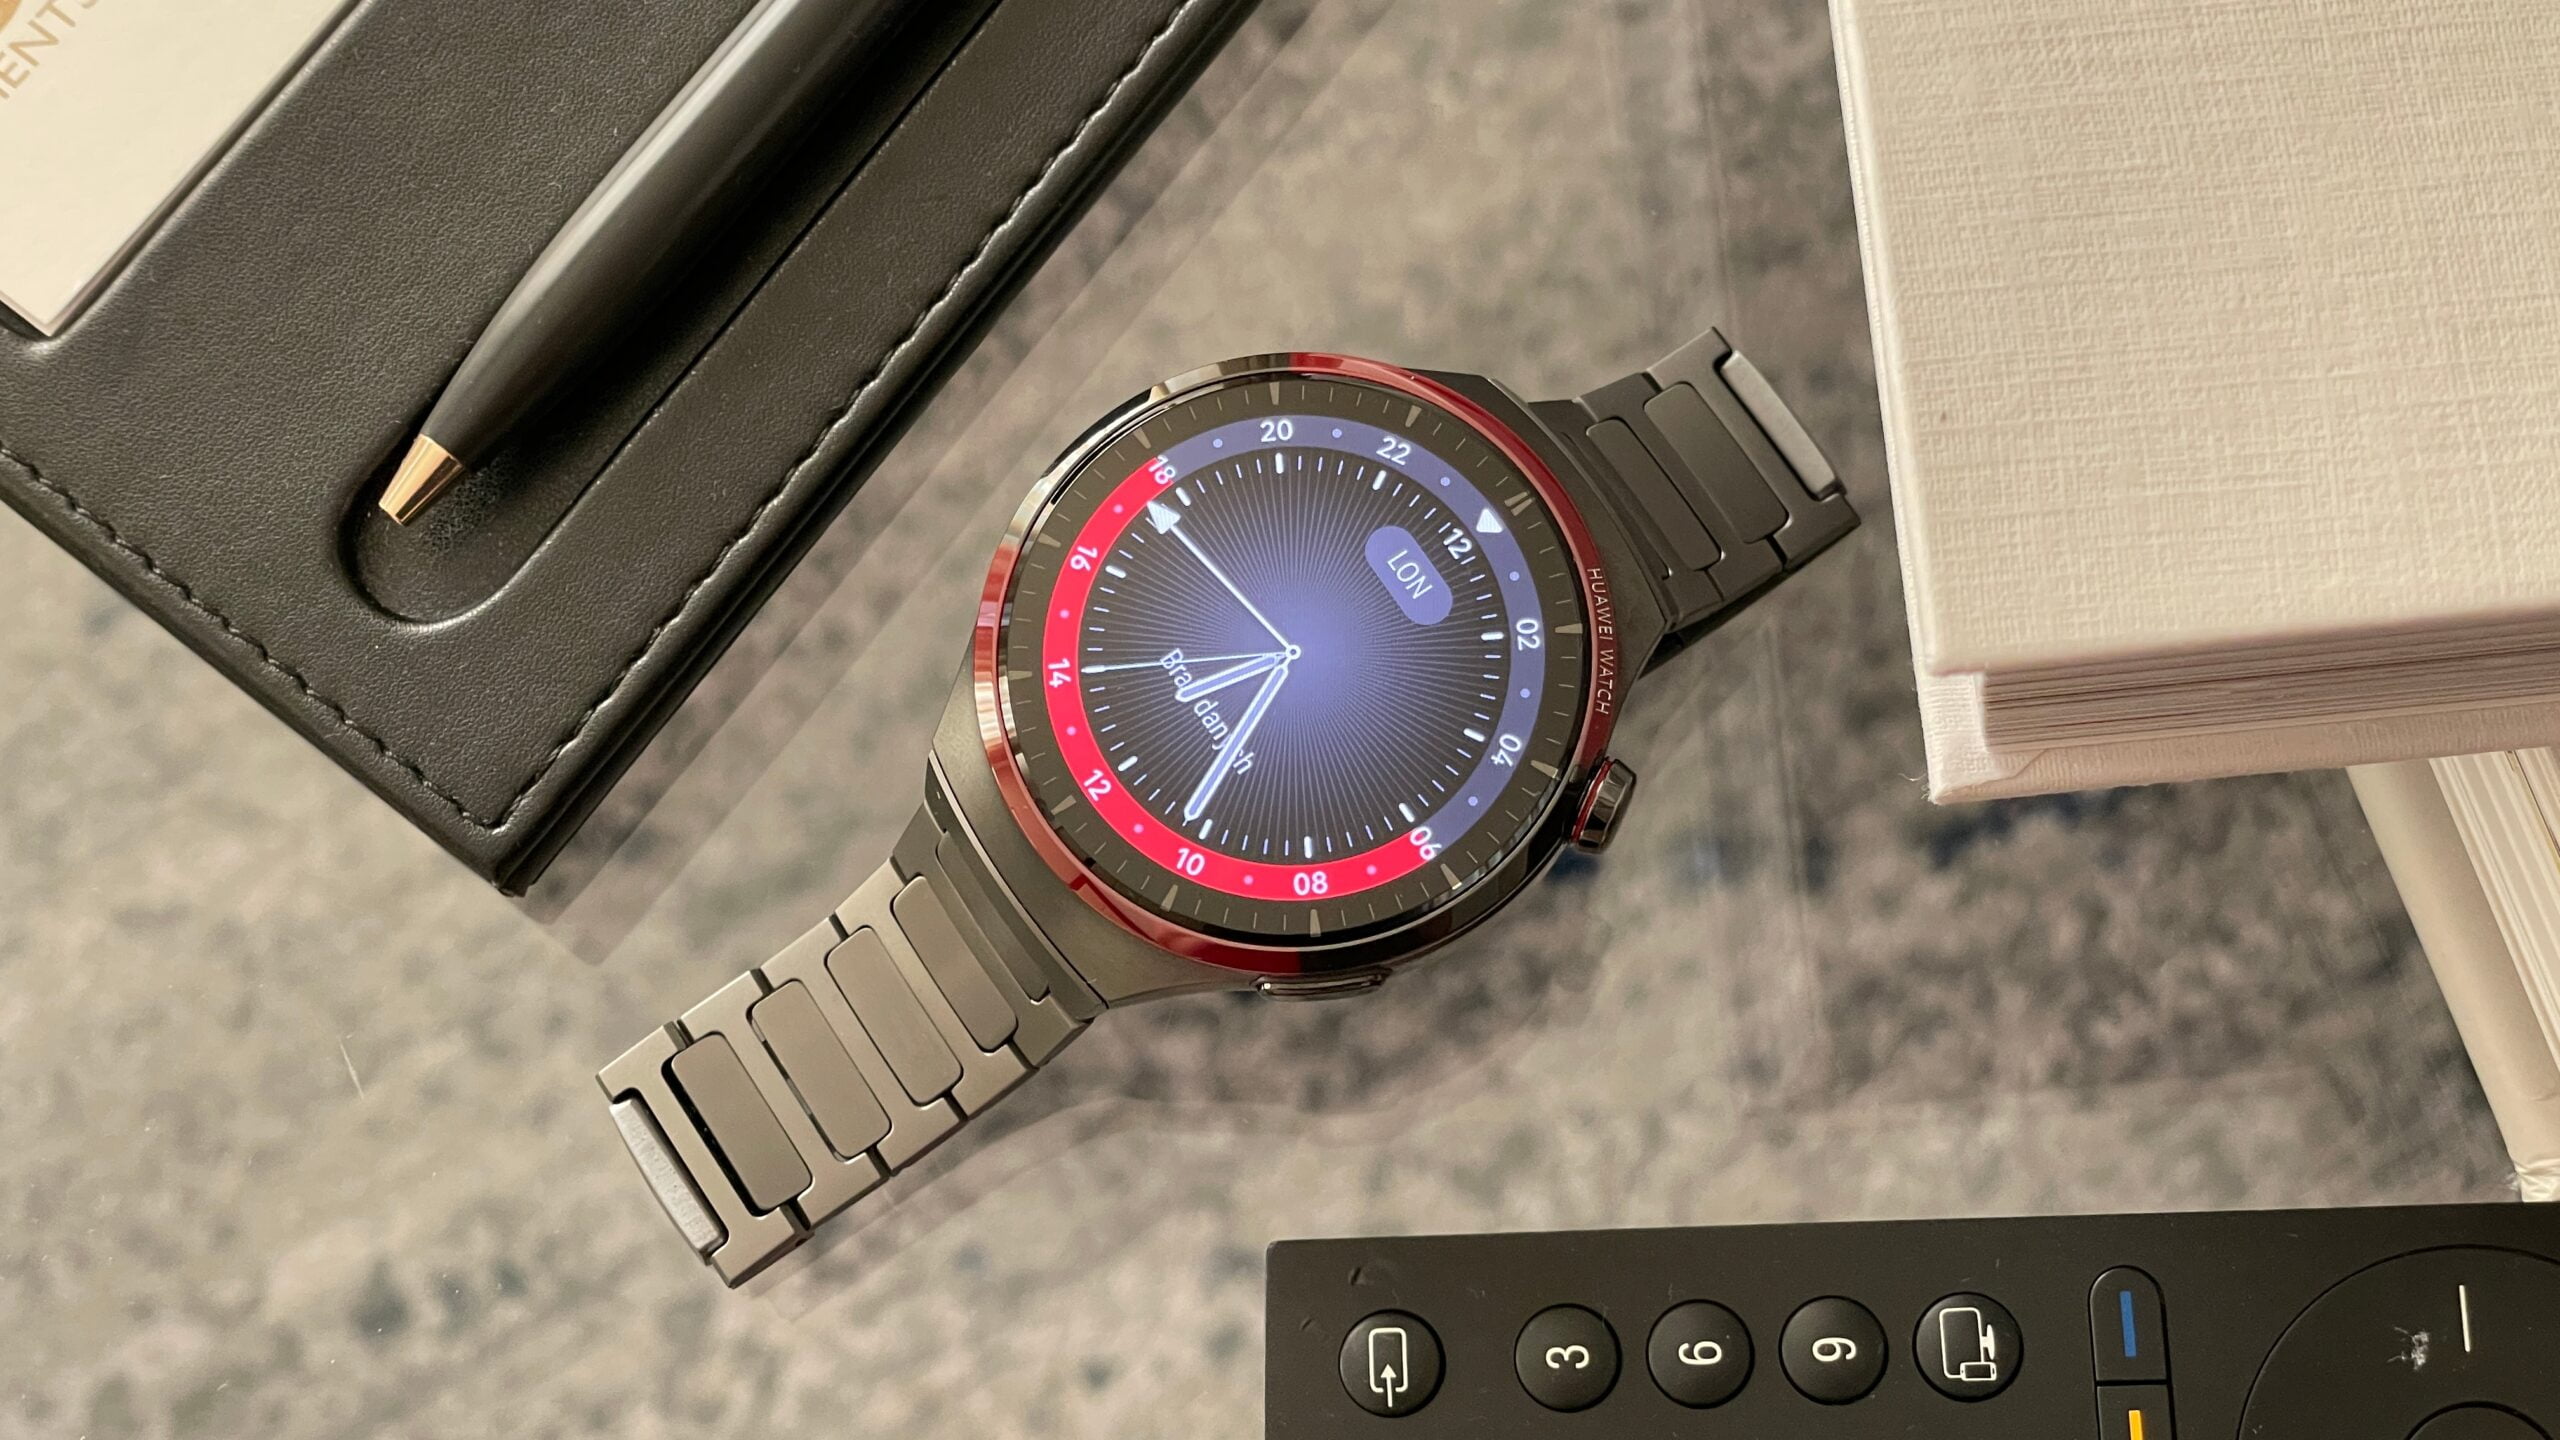 Smartwatch Huawei Watch z metalową bransoletą, czarnym skórzanym notesem, piórem i pilotem do telewizora na stole.